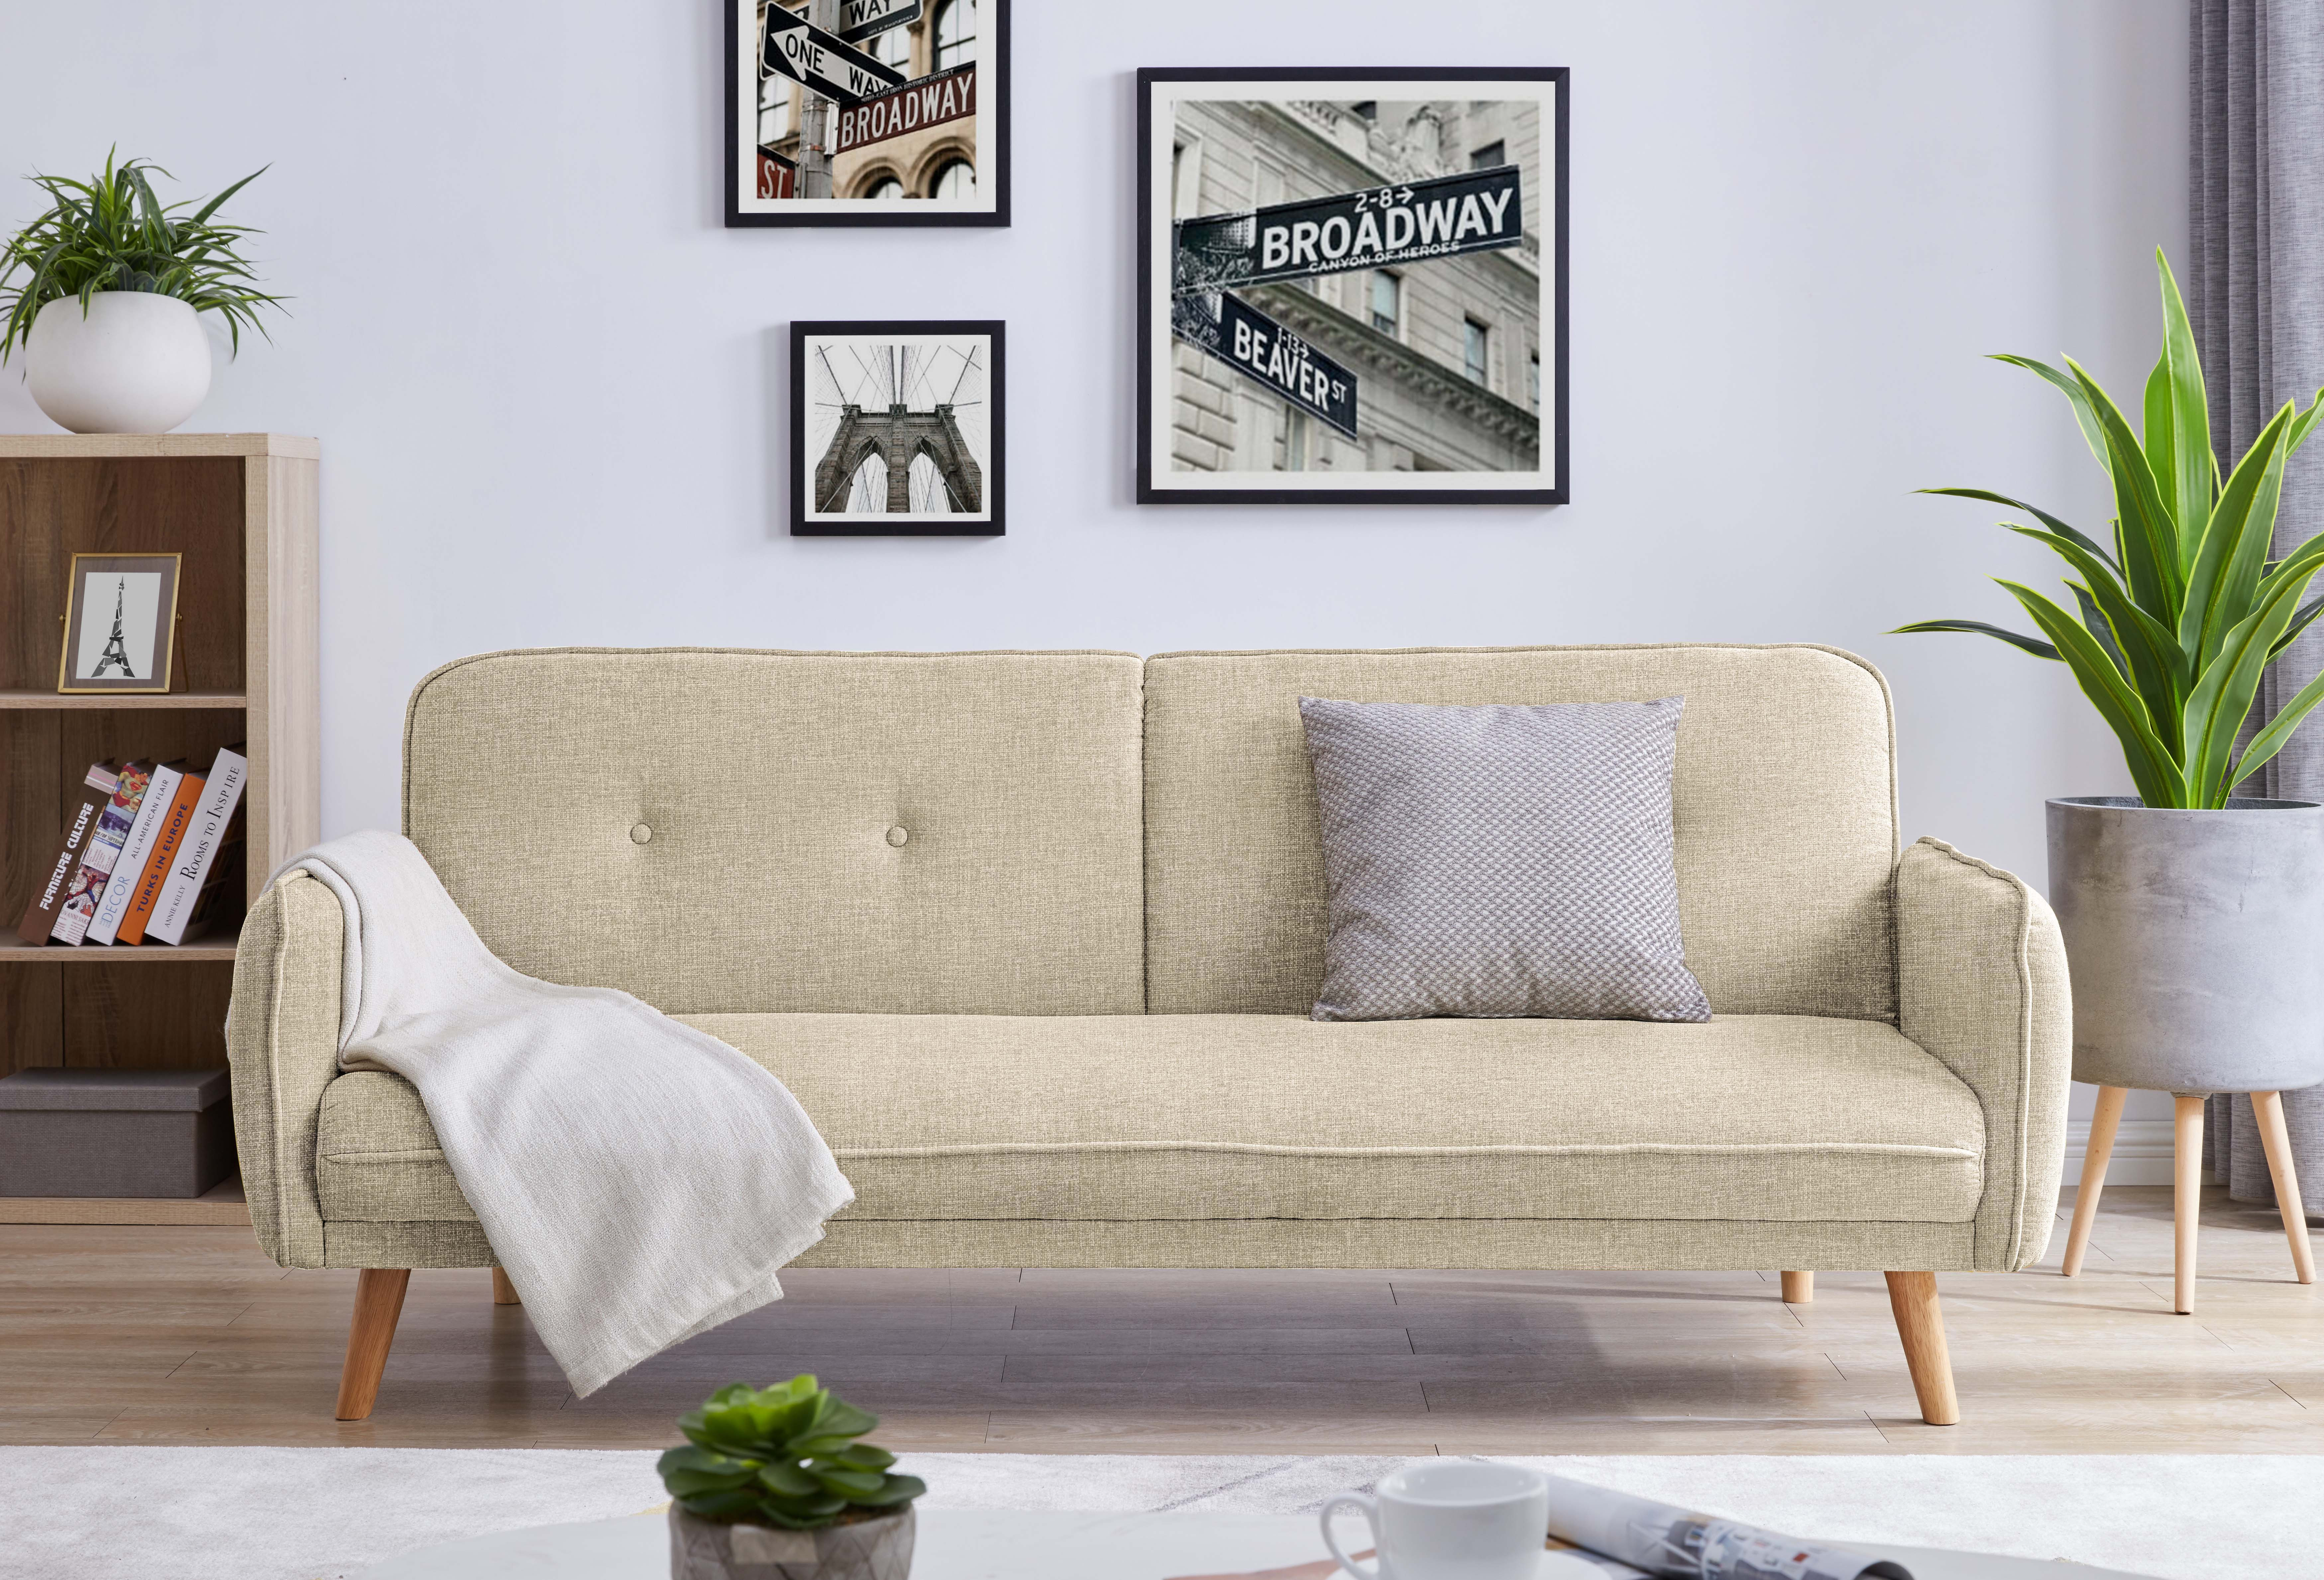 canapé sofa modulaire multifonctionnel blocs en mousse pour les